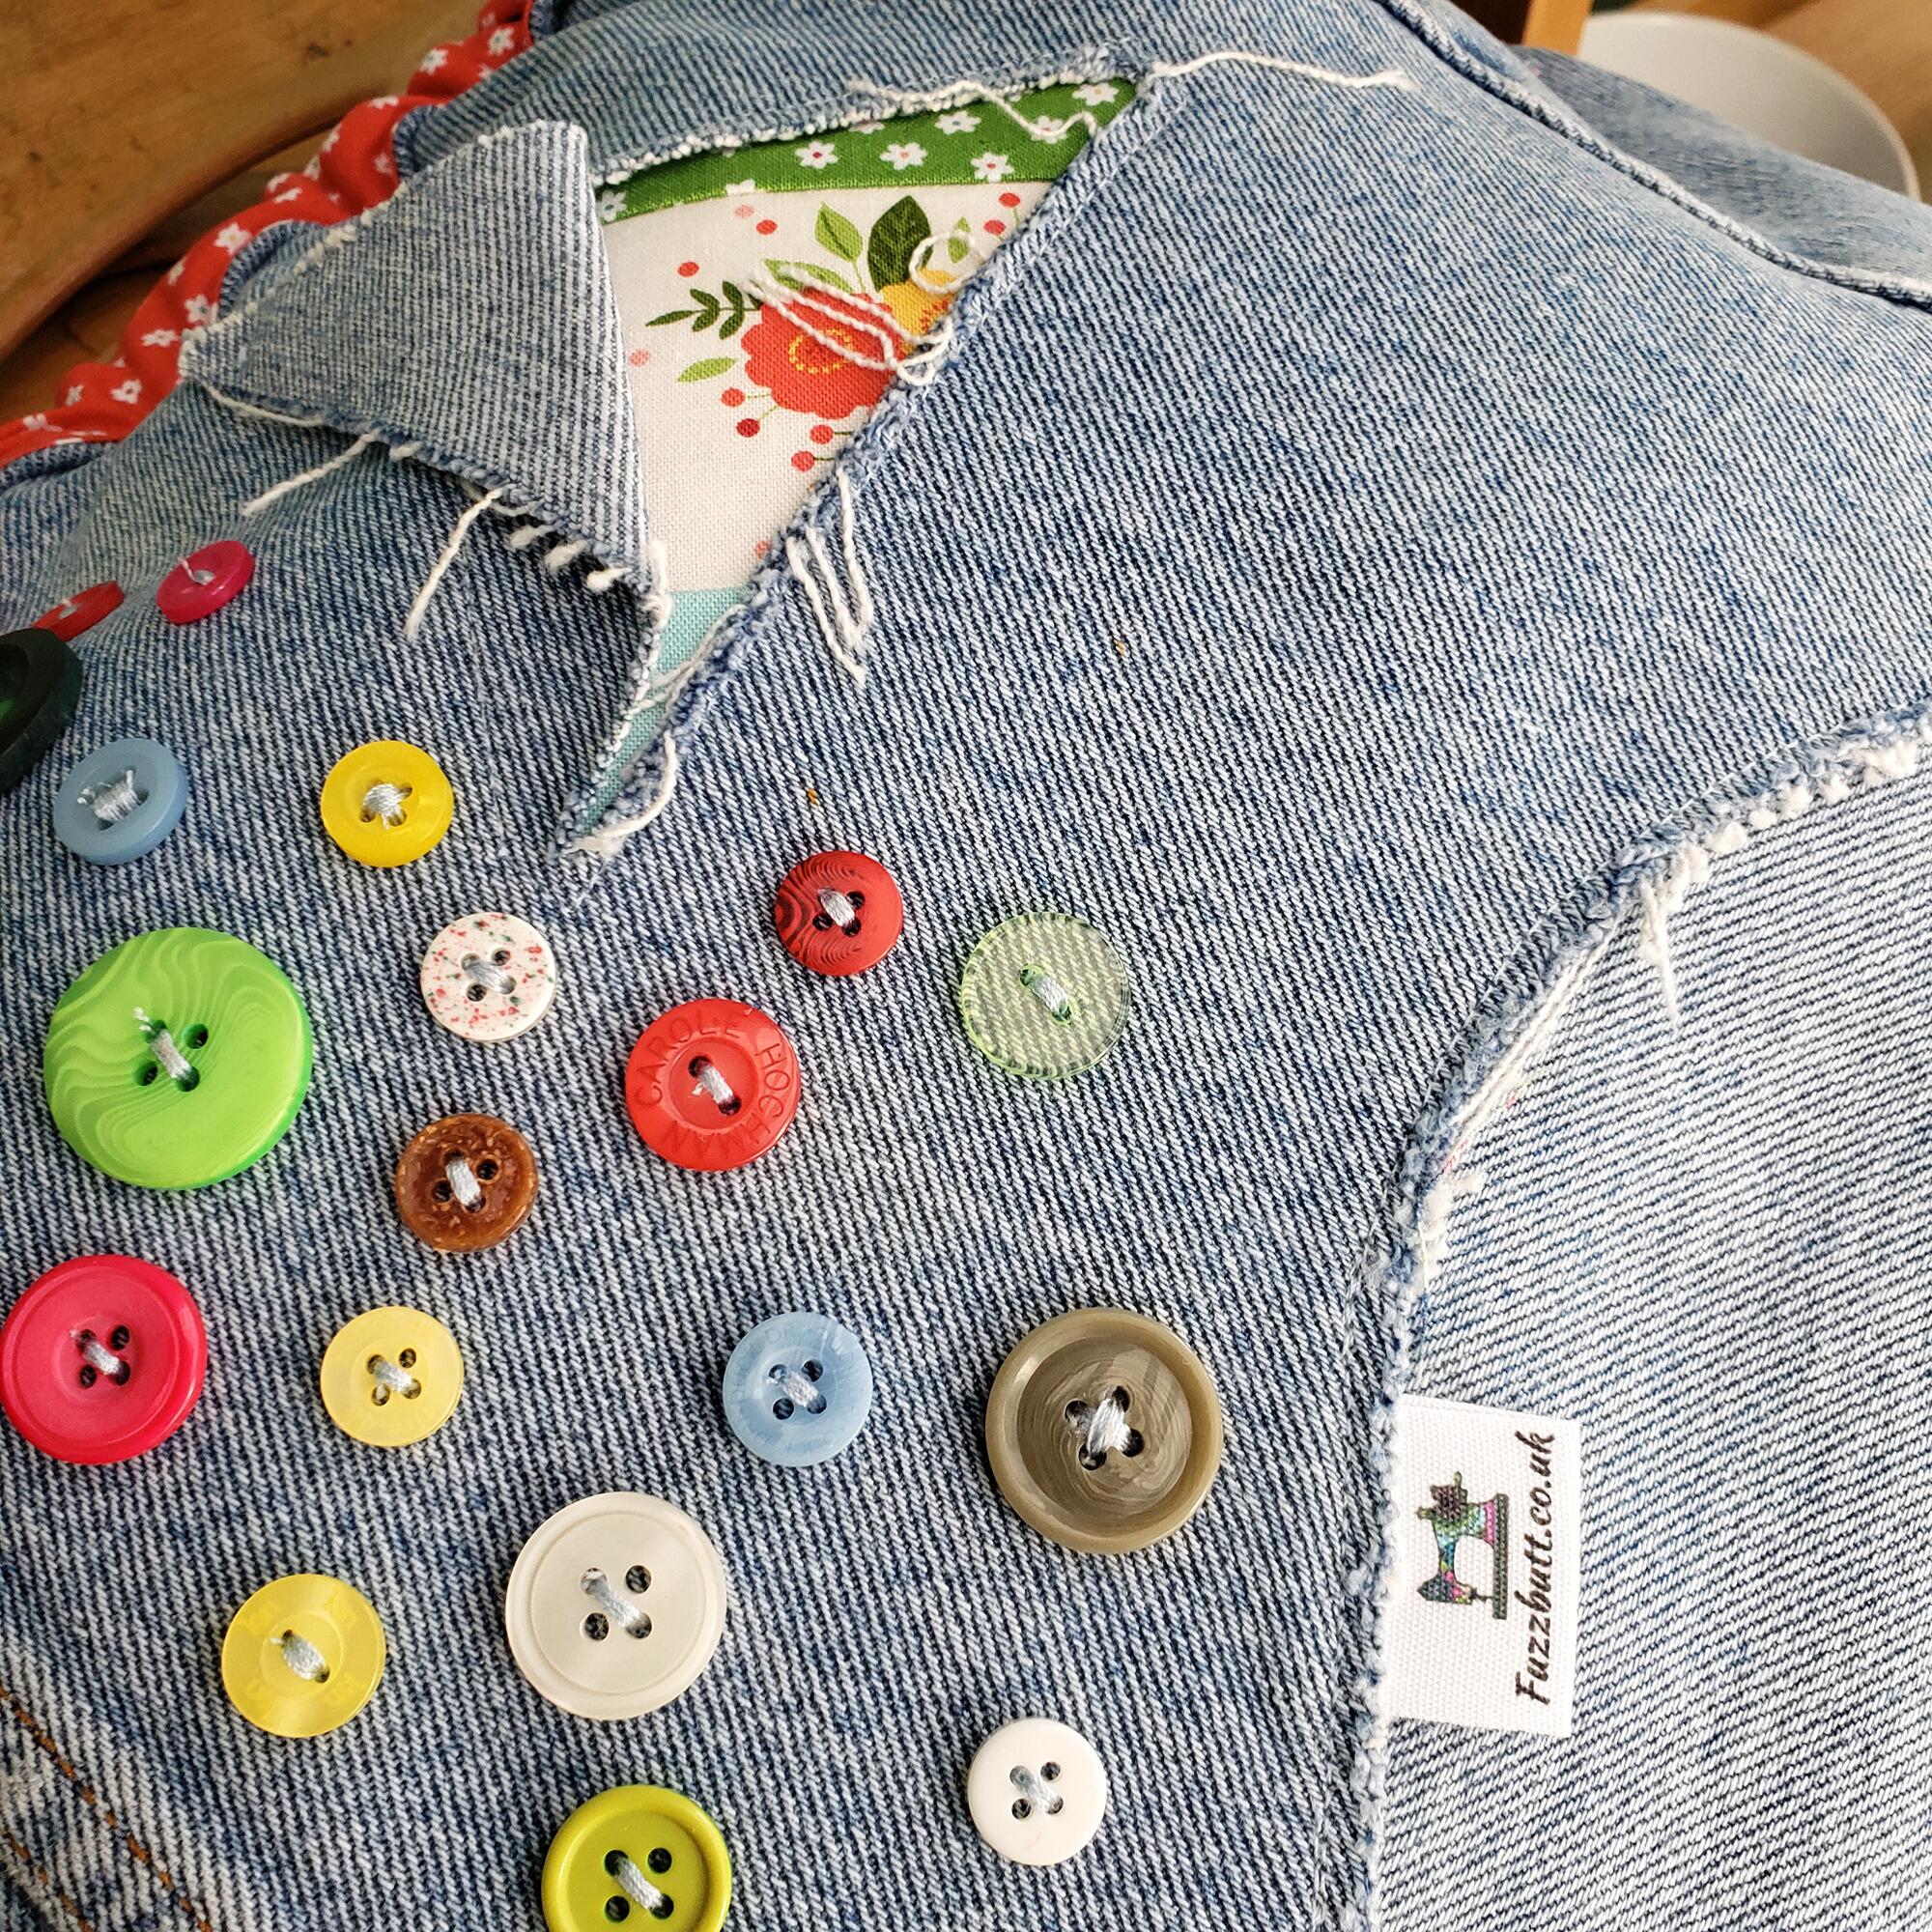 Justin's Jeans upcycled denim bag,makower,amelia,flowers,floral, patchwork denim, jeans,bag,handbag,flowers,old jeans,levis,recycled denim